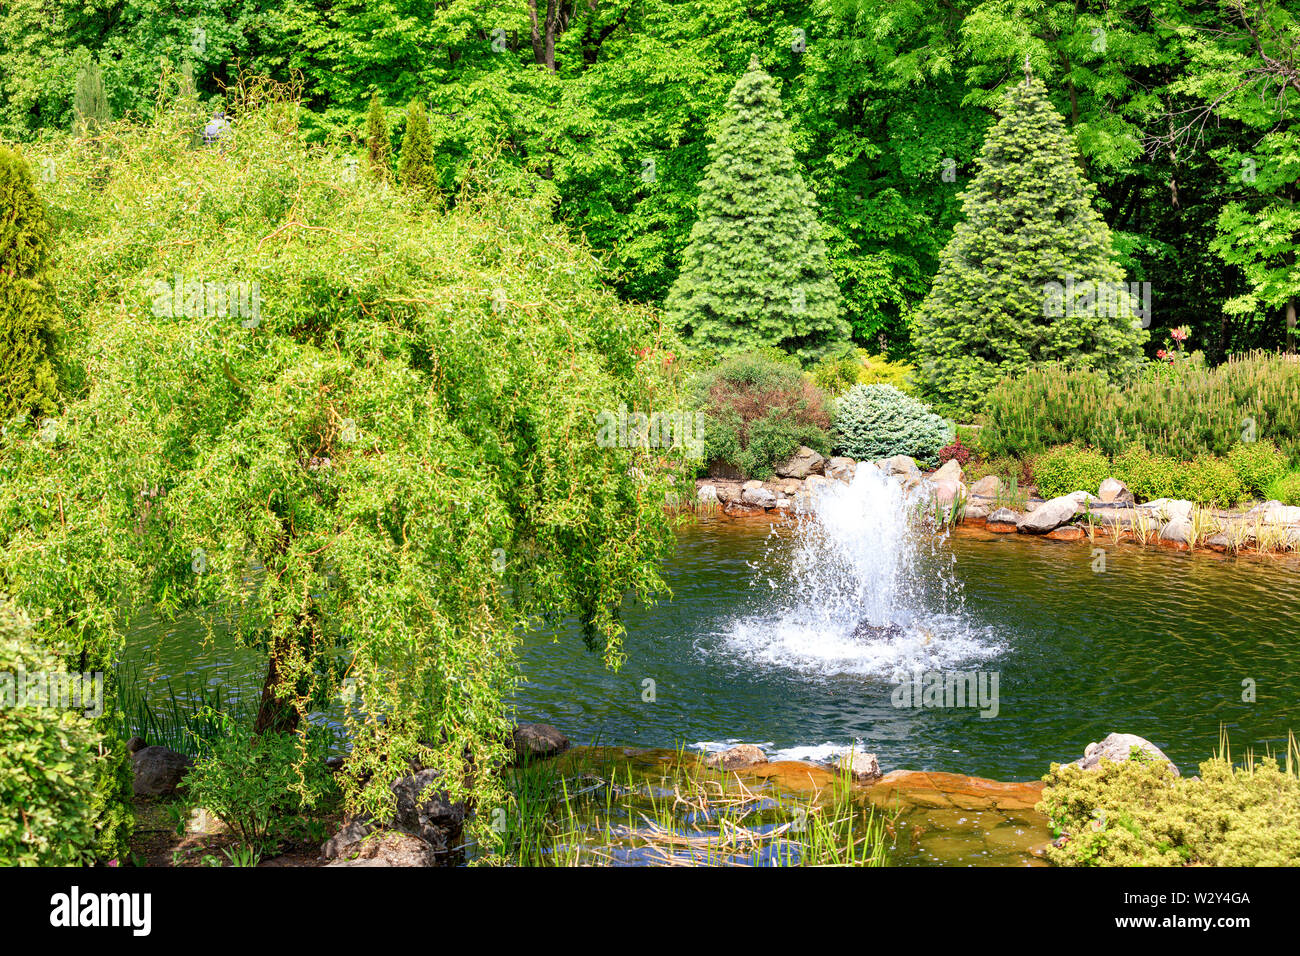 Ein kleiner Springbrunnen in einem dekorativen Teich, durch Bäume und Büsche in einem schönen Park umgeben, erfrischt die Luft im heißen Sommer in den Strahlen der weichen sunligh Stockfoto